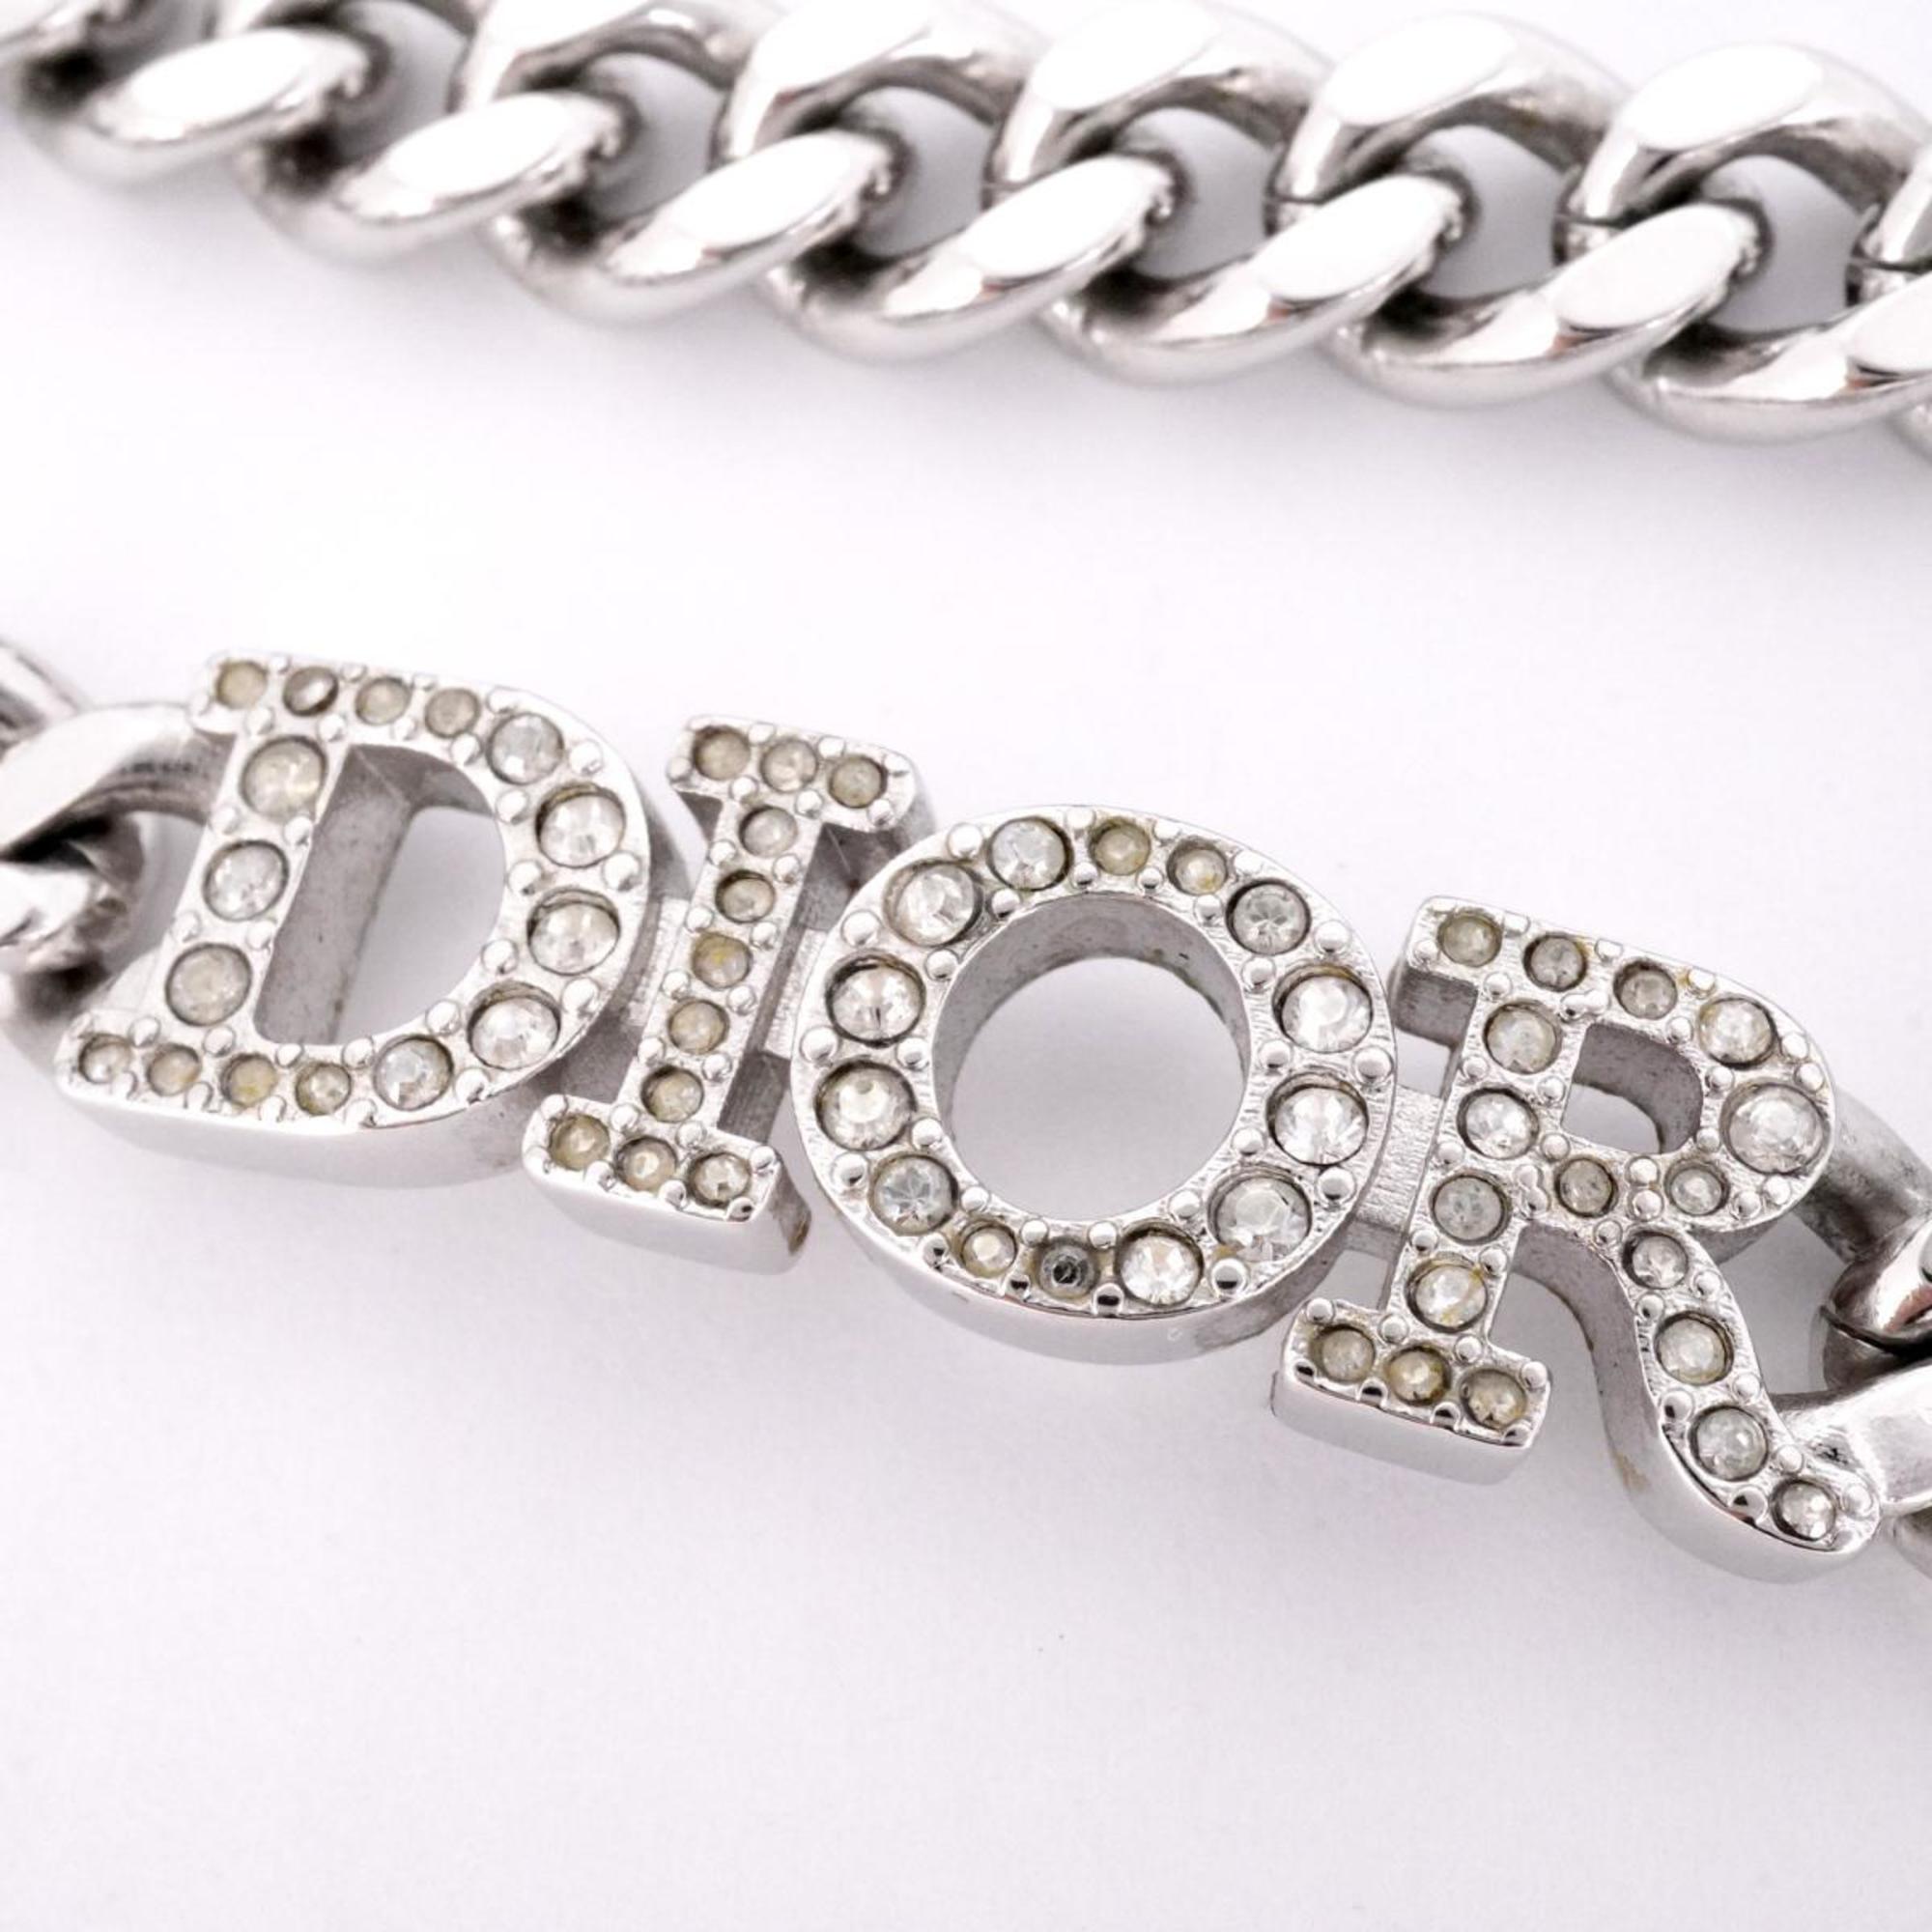 クリスチャン・ディオール(Christian Dior) クリスチャンディオール ネックレス ディオール ラインストーン メタル素材 シルバー  レディース